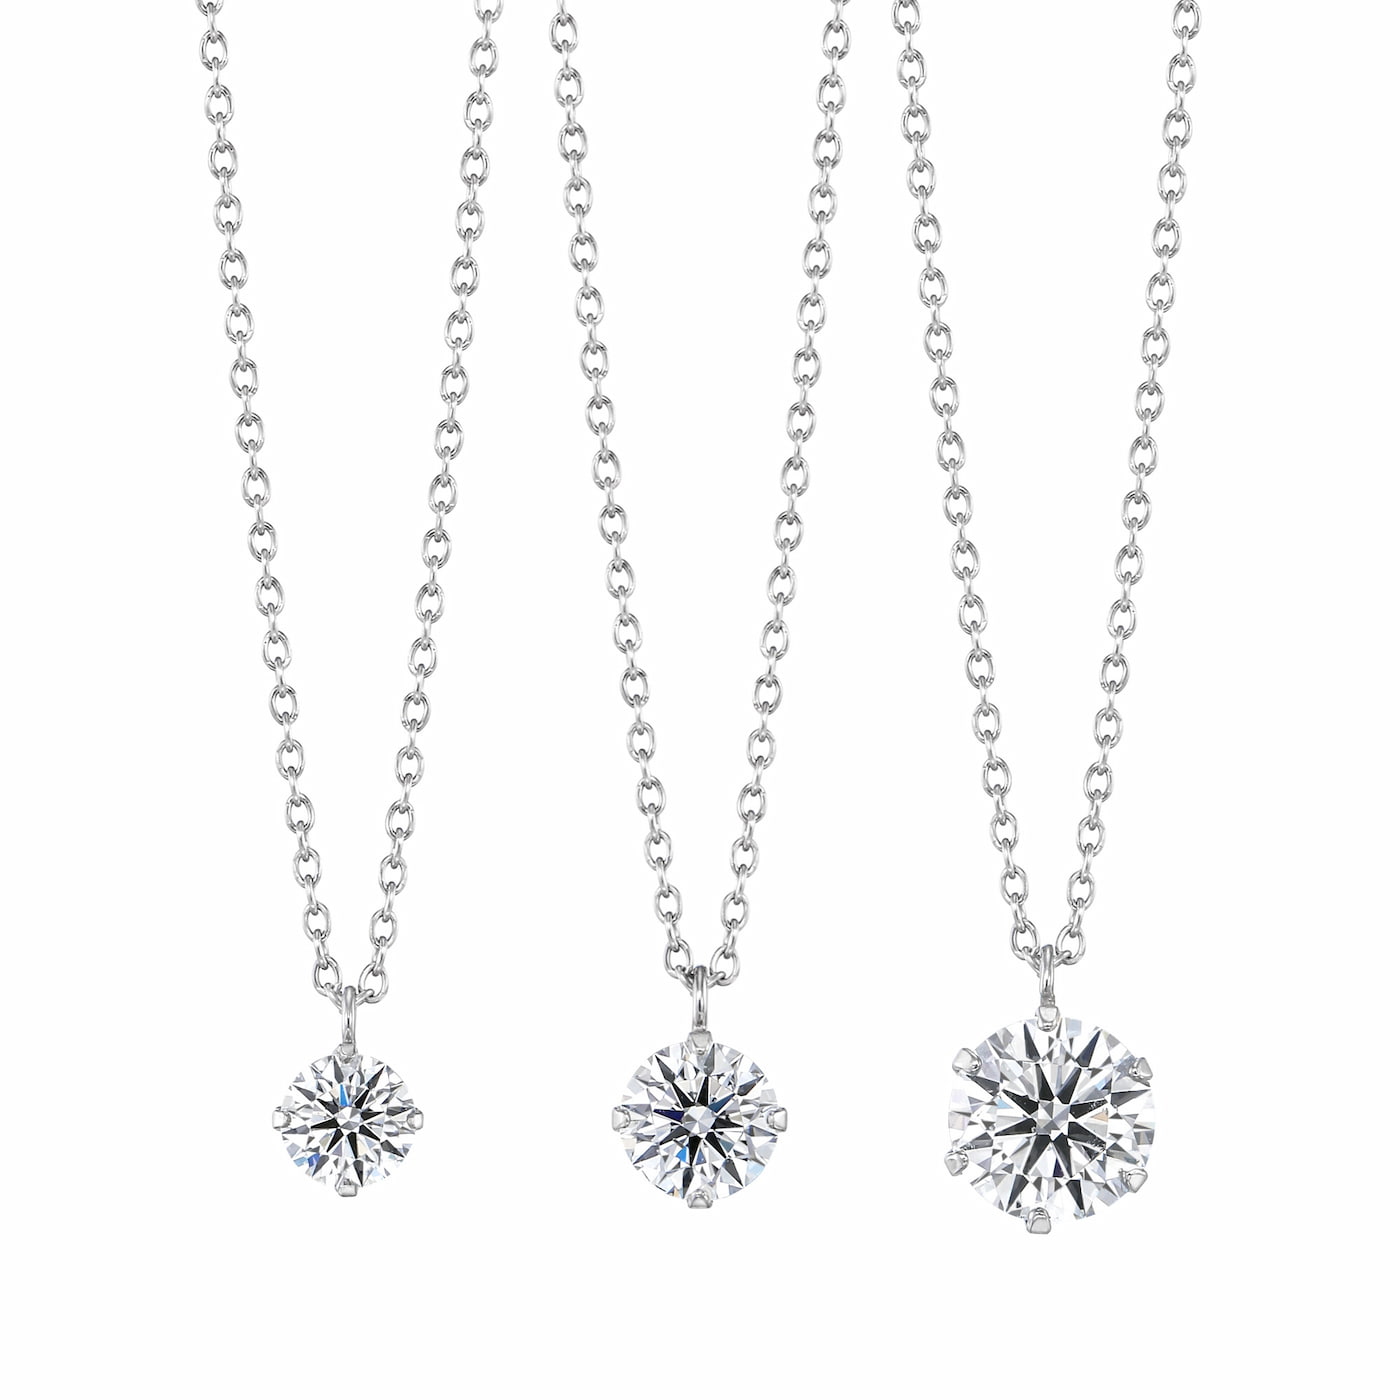 ラボグロウンダイヤモンド専門店『september5』の一粒爪どめダイヤプラチナネックレスの比較。左、0.3ct一粒ダイヤモンドネックレス、真ん中0.5ct一粒ダイヤモンドネックレス、右、1.0ct一粒ダイヤモンドネックレス。